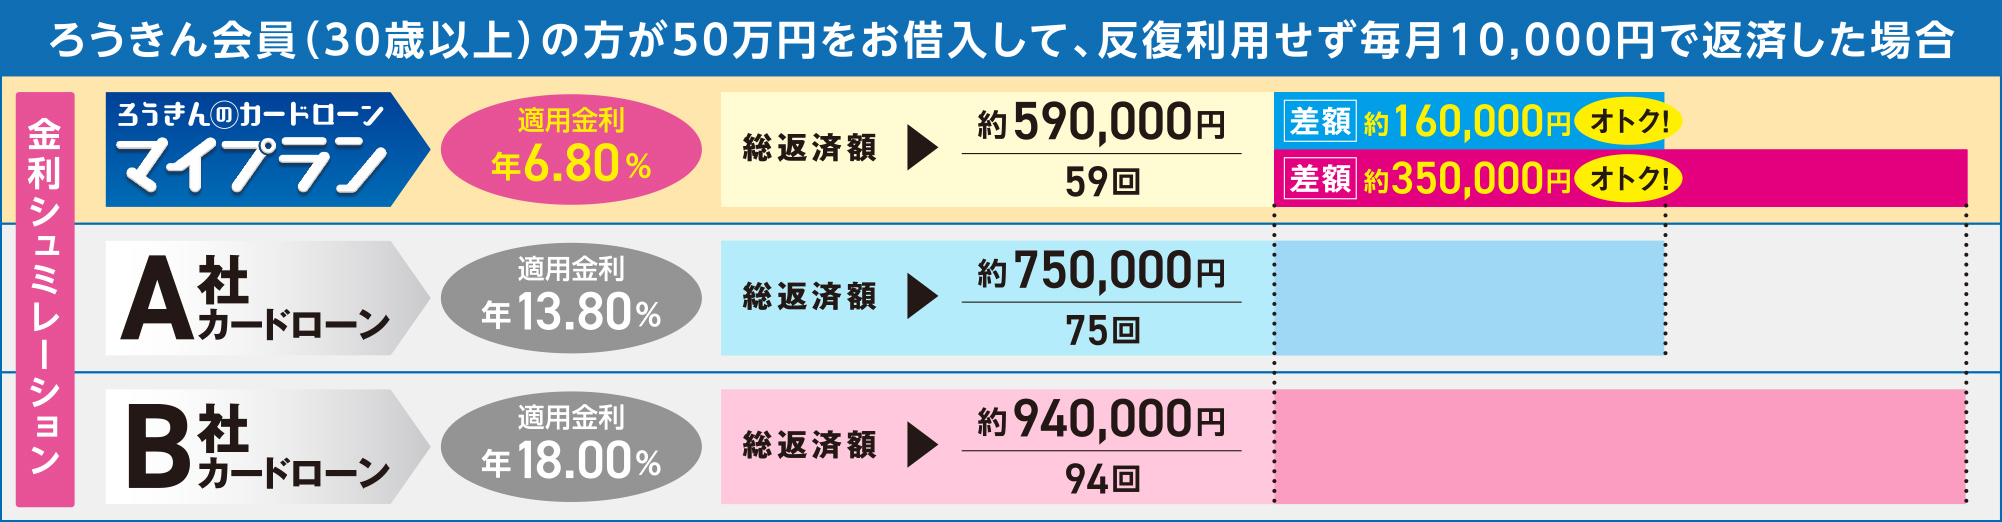 ろうきん会員（30歳以上）の方が50万円をお借入して、	反復利用せず毎月10,000円で返済した場合